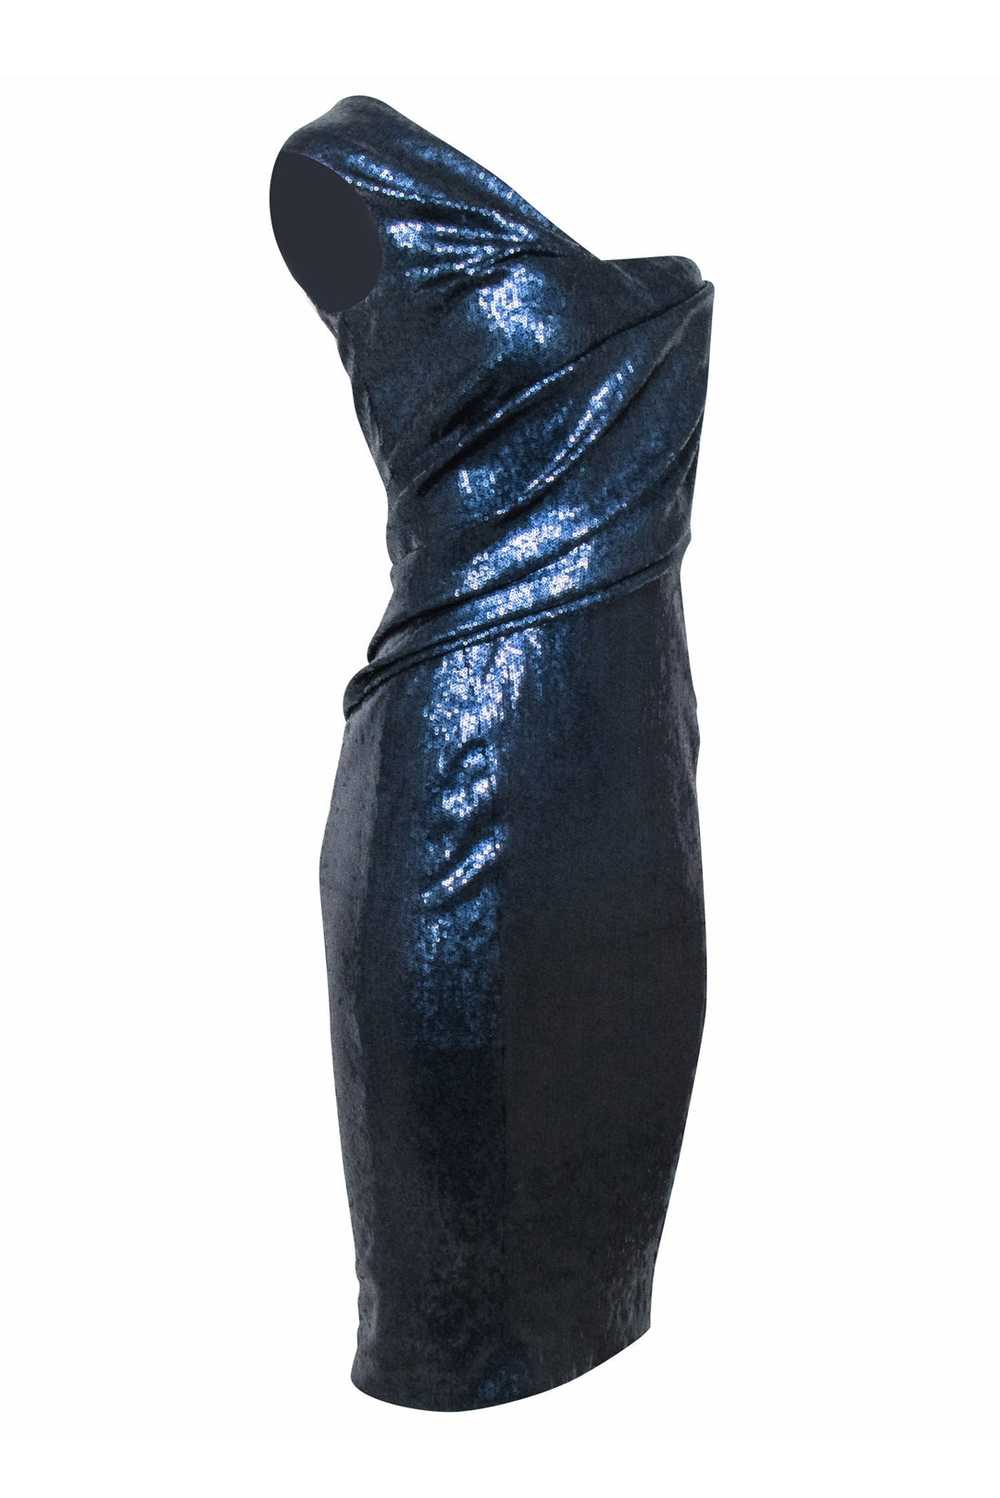 Donna Karan - Navy Sequins One Shoulder Dress Sz 6 - image 2